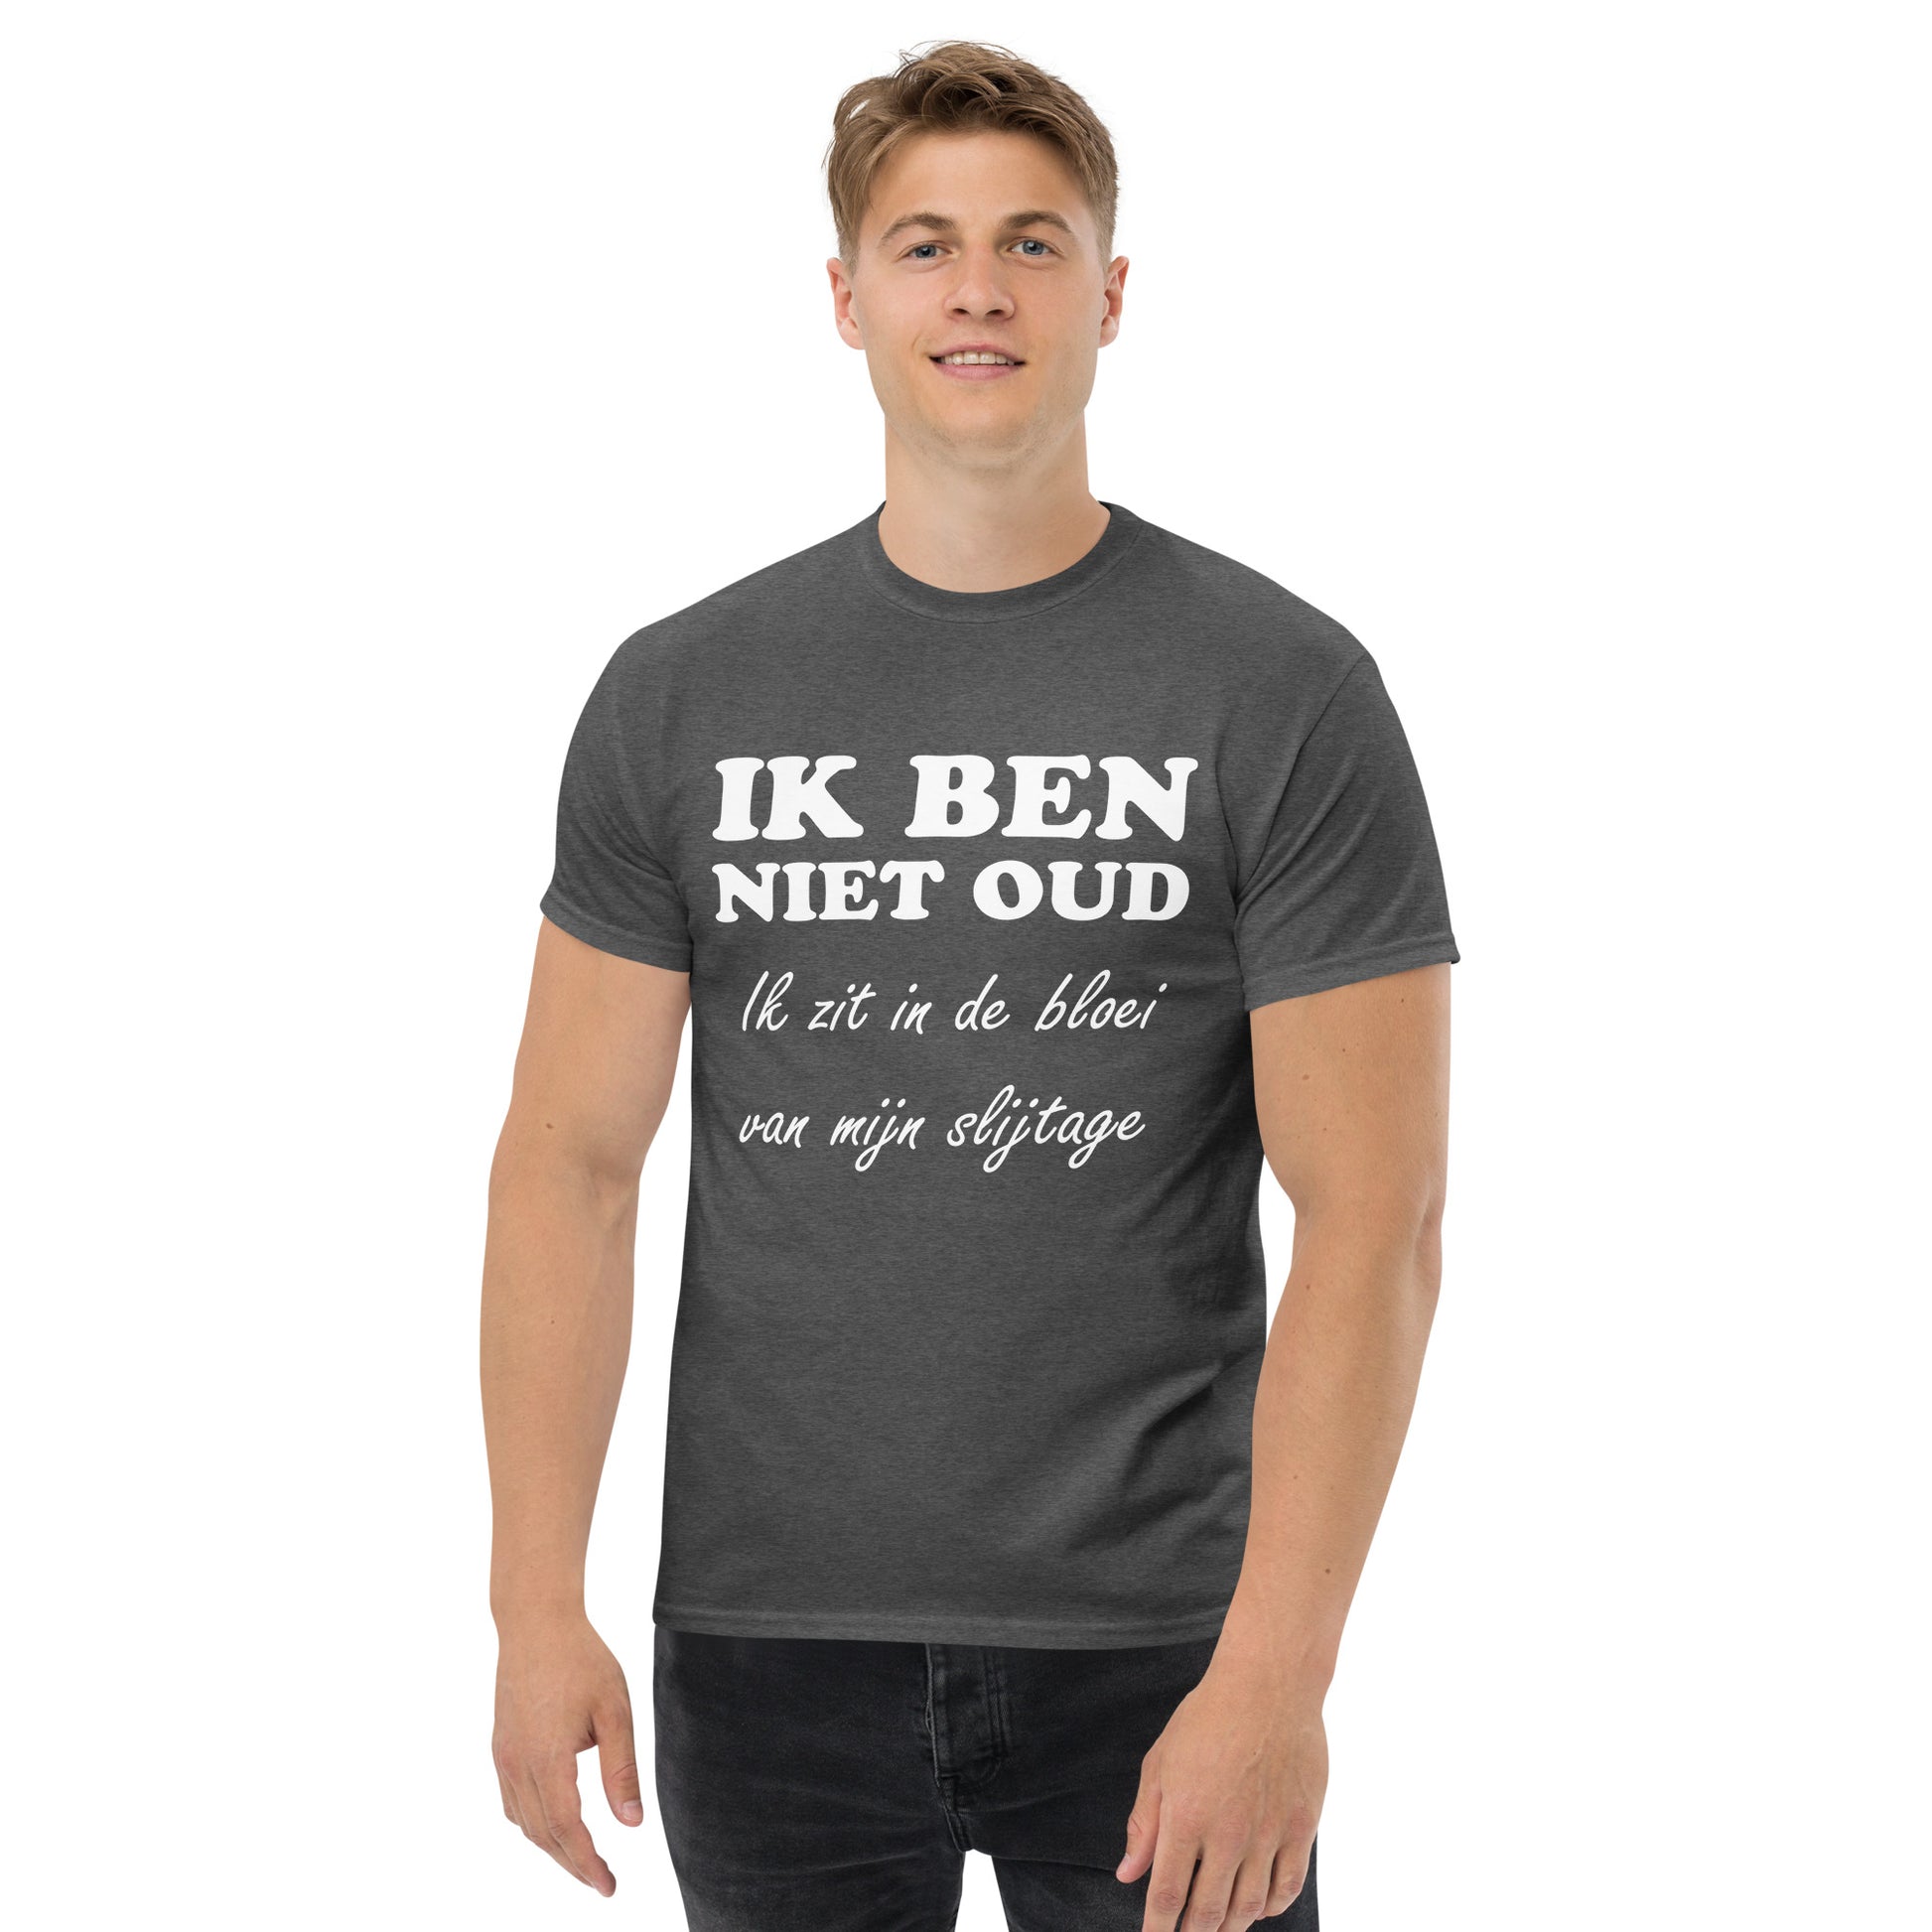 Men with Dark heather T-shirt with the text in white "IK BEN NIET OUD ik zit in de bloei van mijn slijtage"